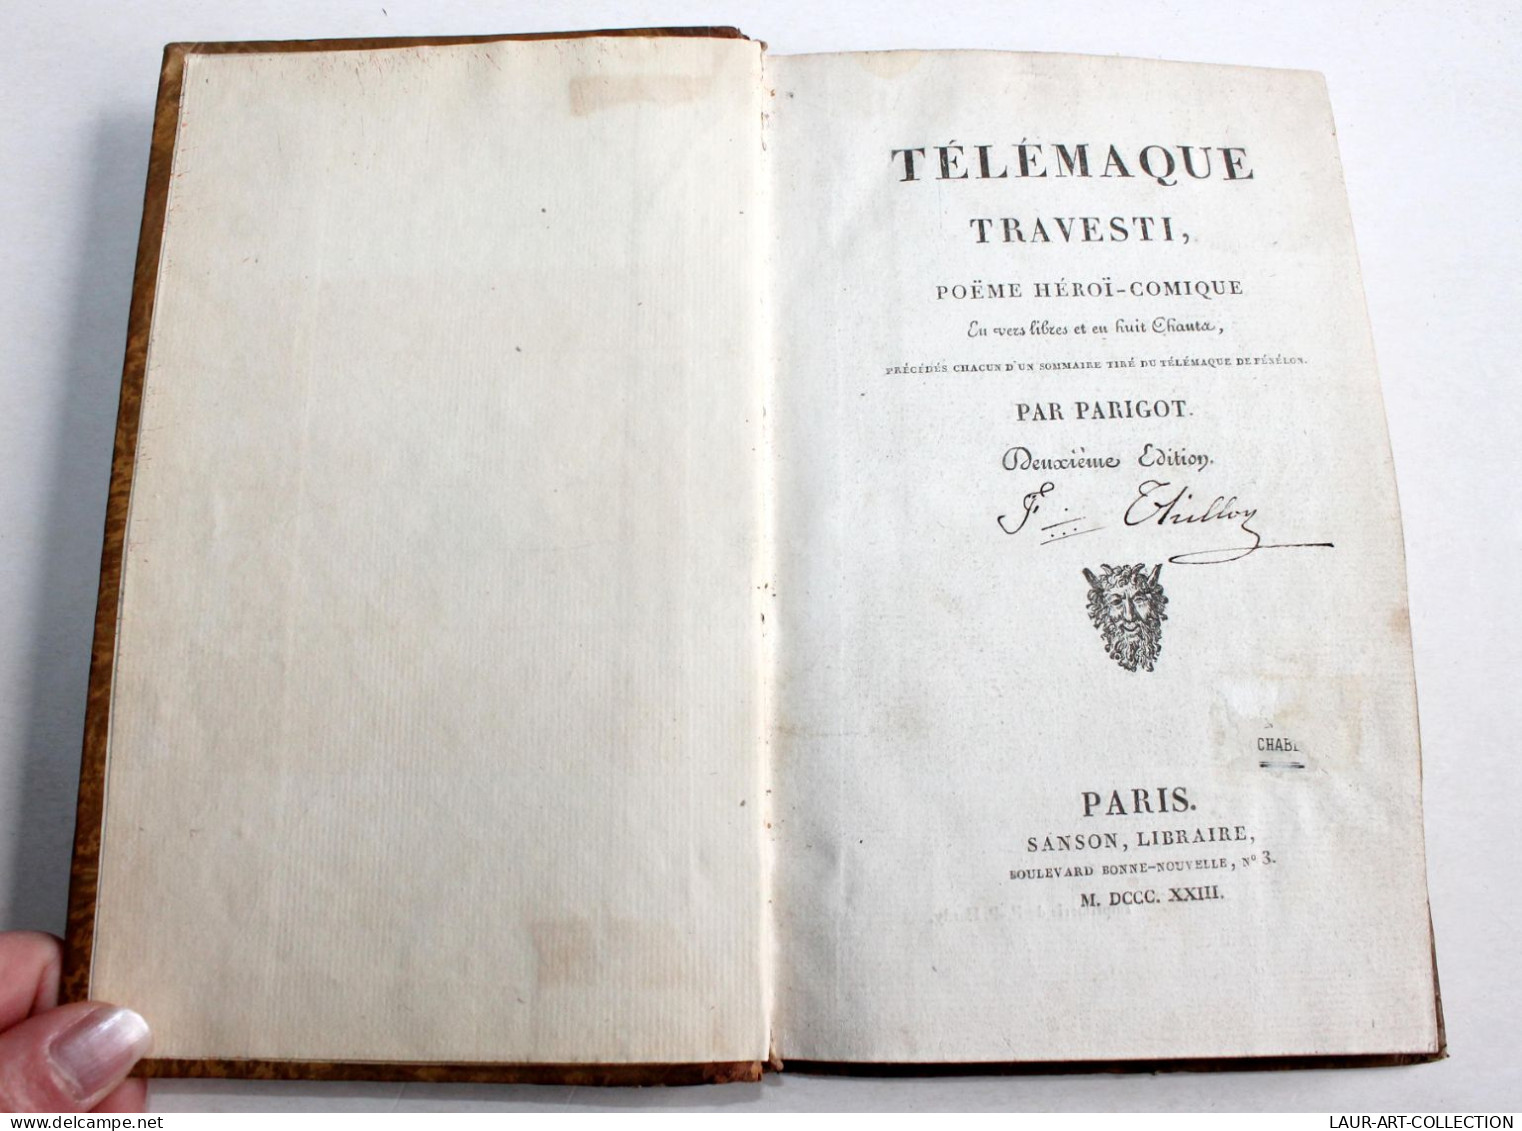 TELEMAQUE TRAVESTI POEME HEROI-COMIQUE EN VERS LIBRE Par PARIGOT 2e EDITION 1823 / ANCIEN LIVRE XIXe SIECLE (1803.79) - French Authors